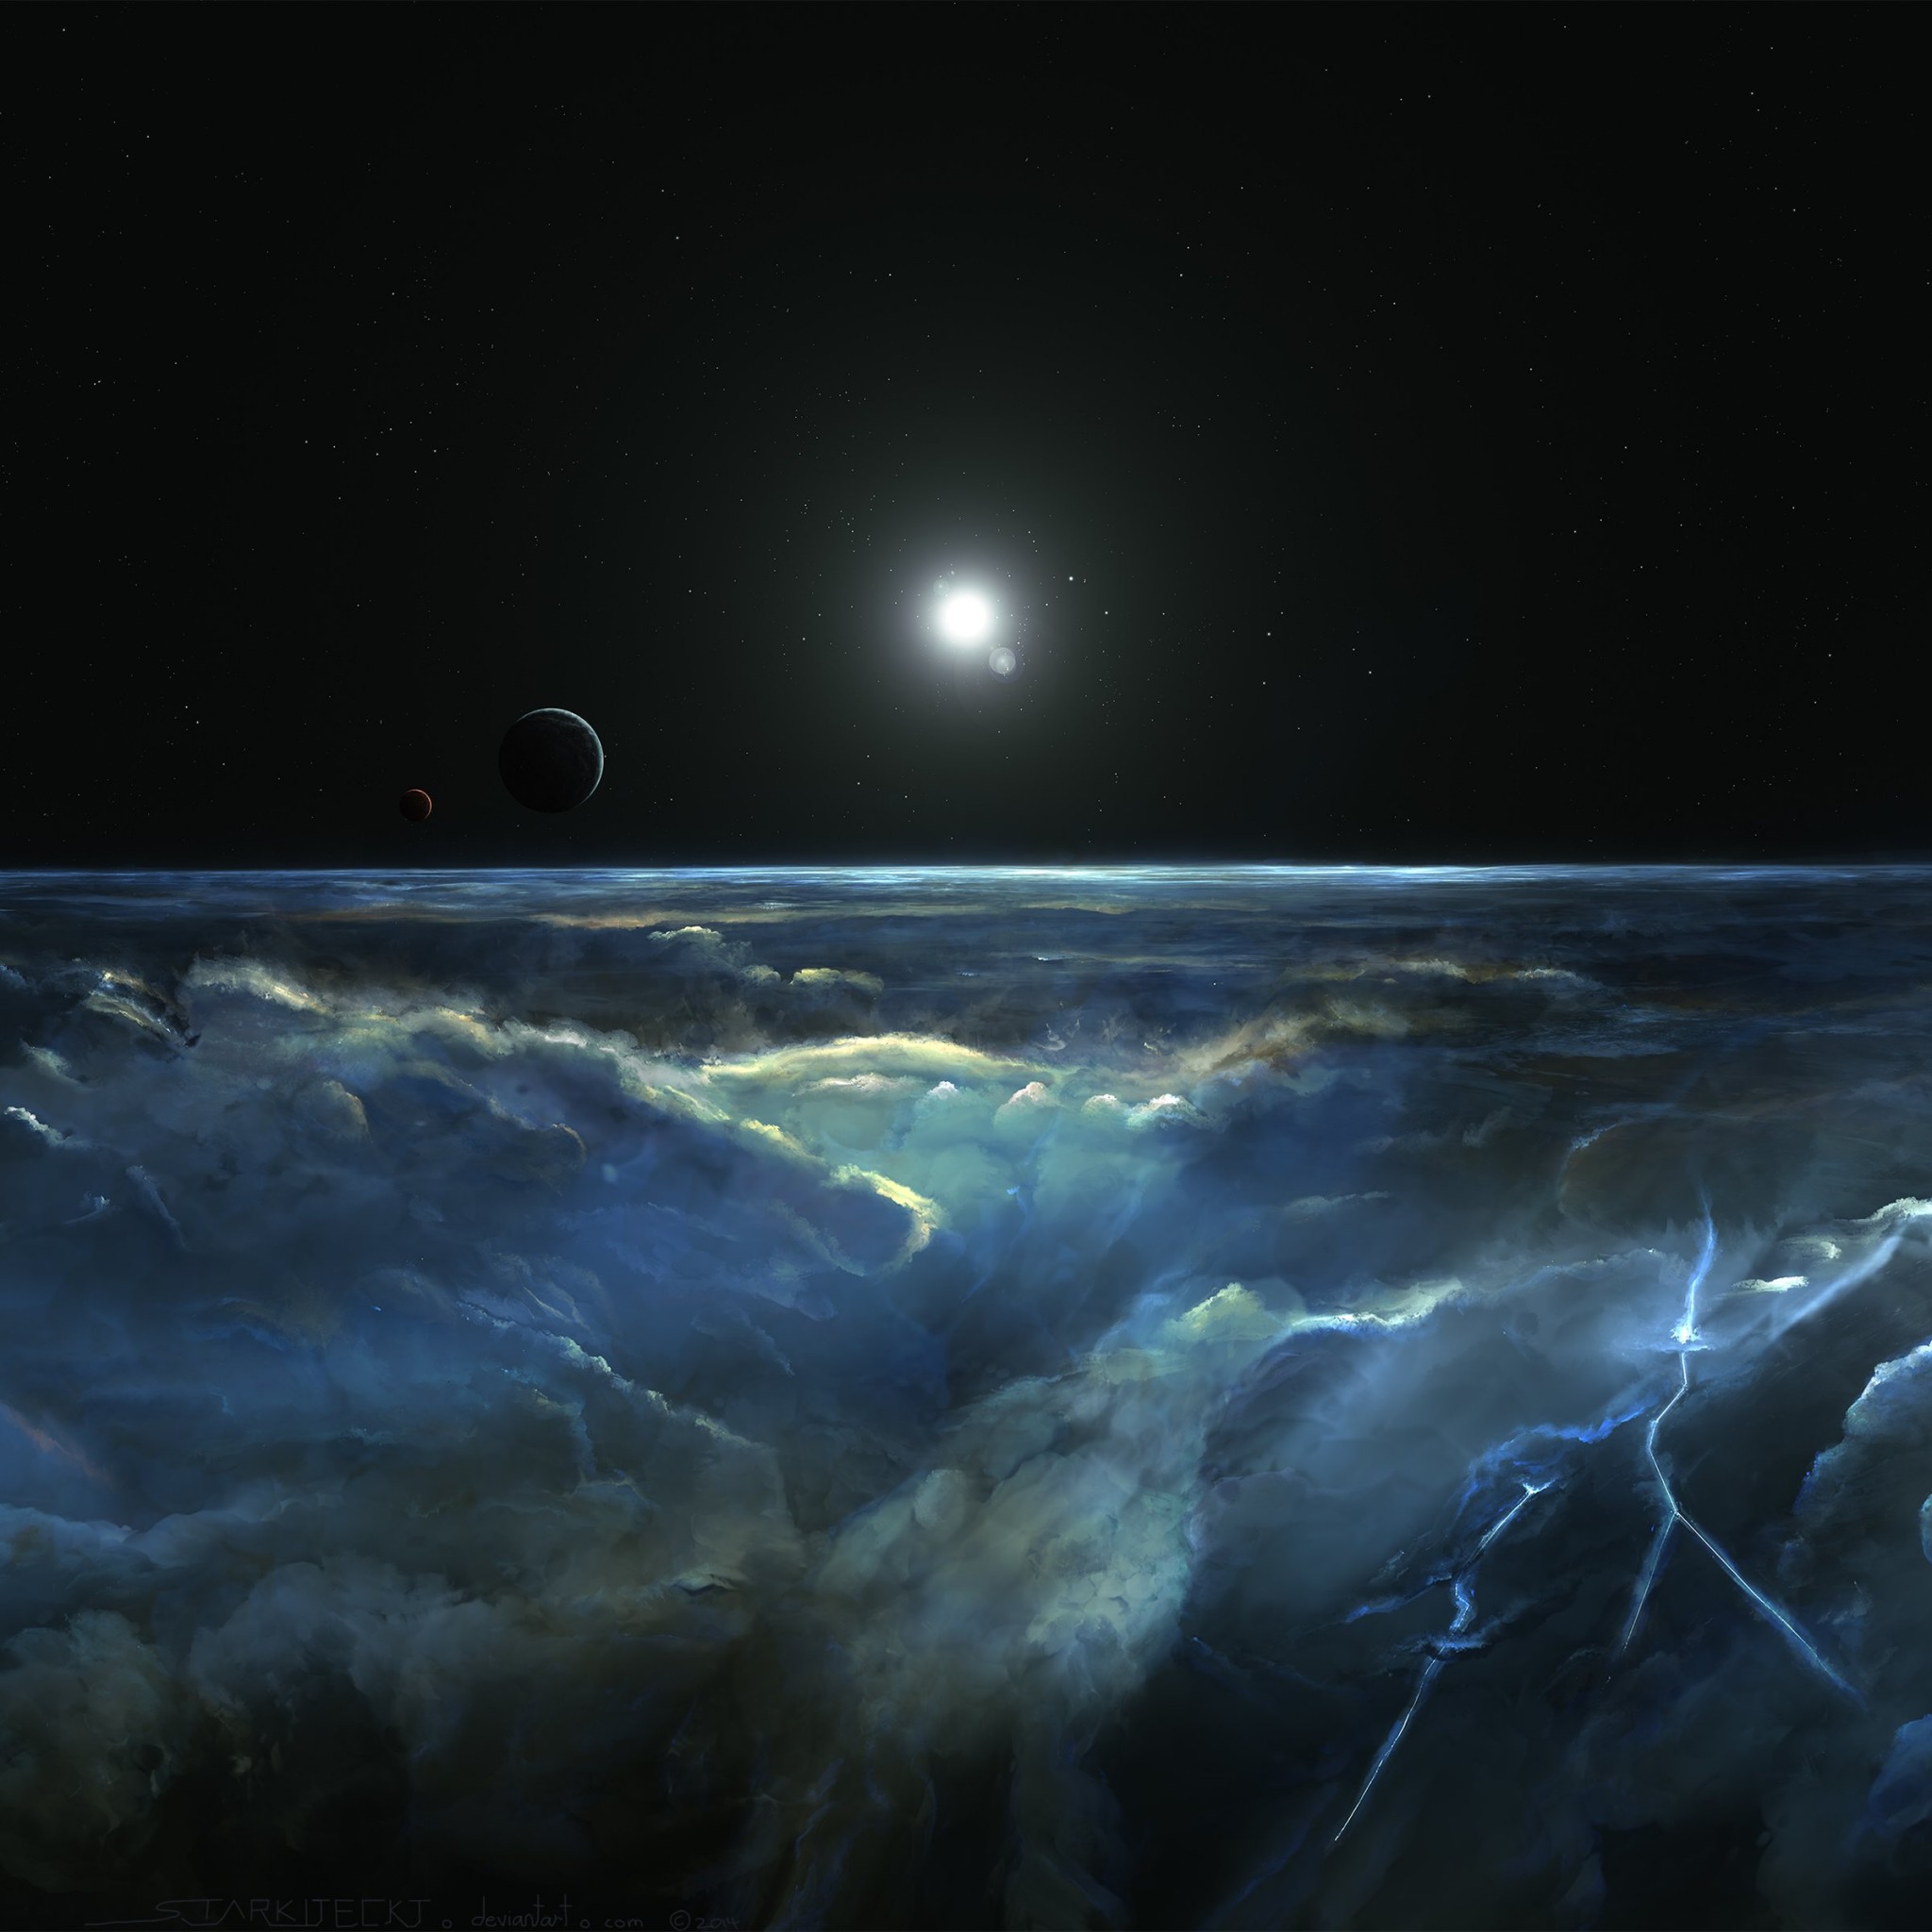 Stormy Atmosphere of Merphlyn Wallpaper for Google Nexus 9